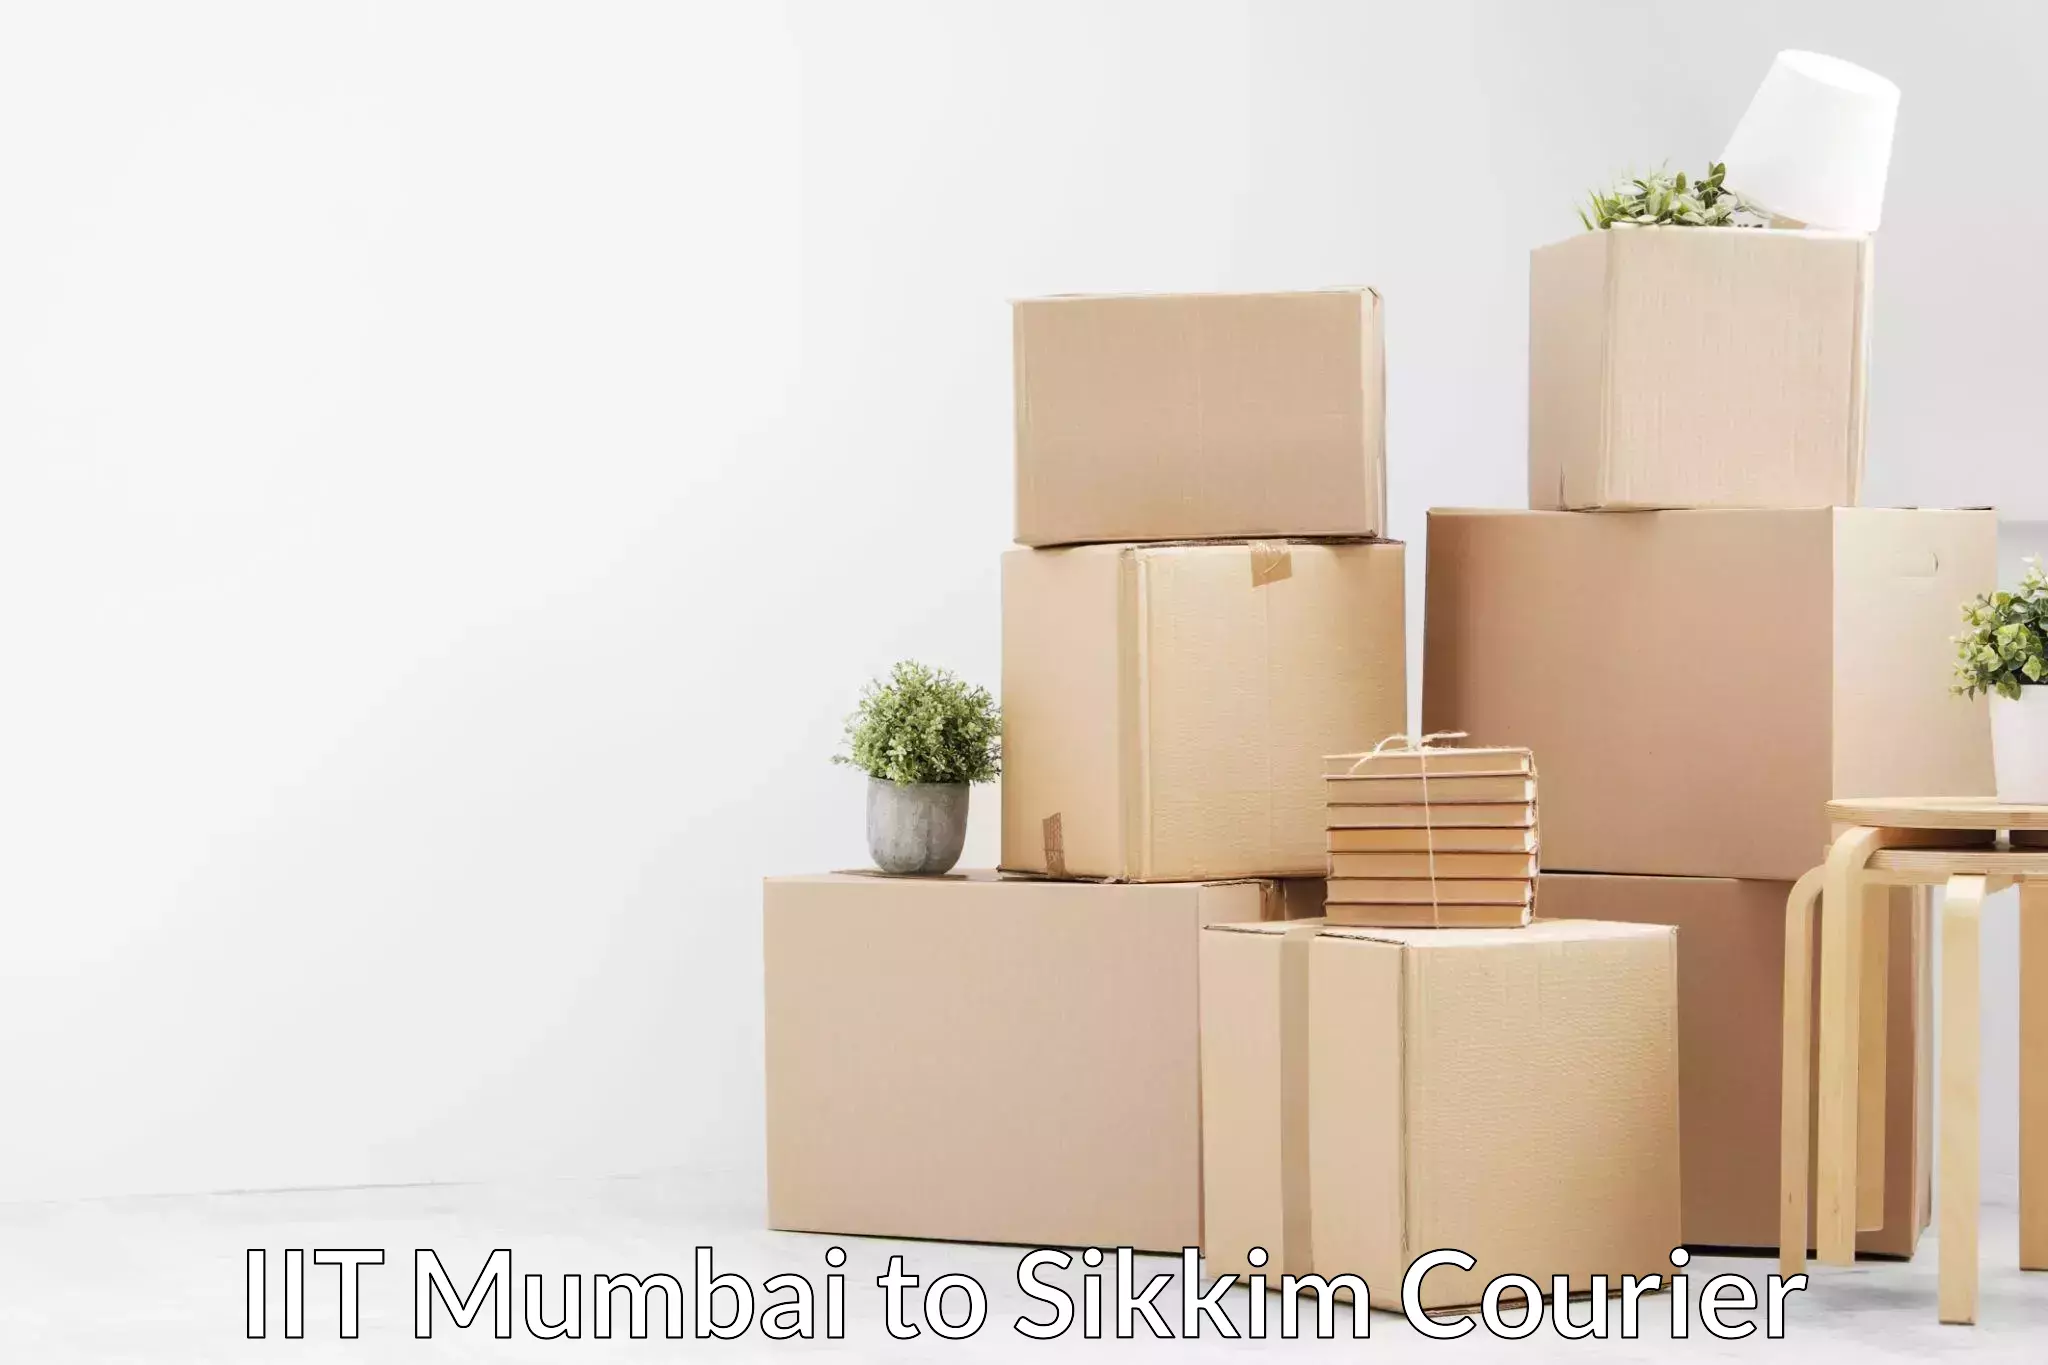 Professional furniture shifting in IIT Mumbai to Rangpo